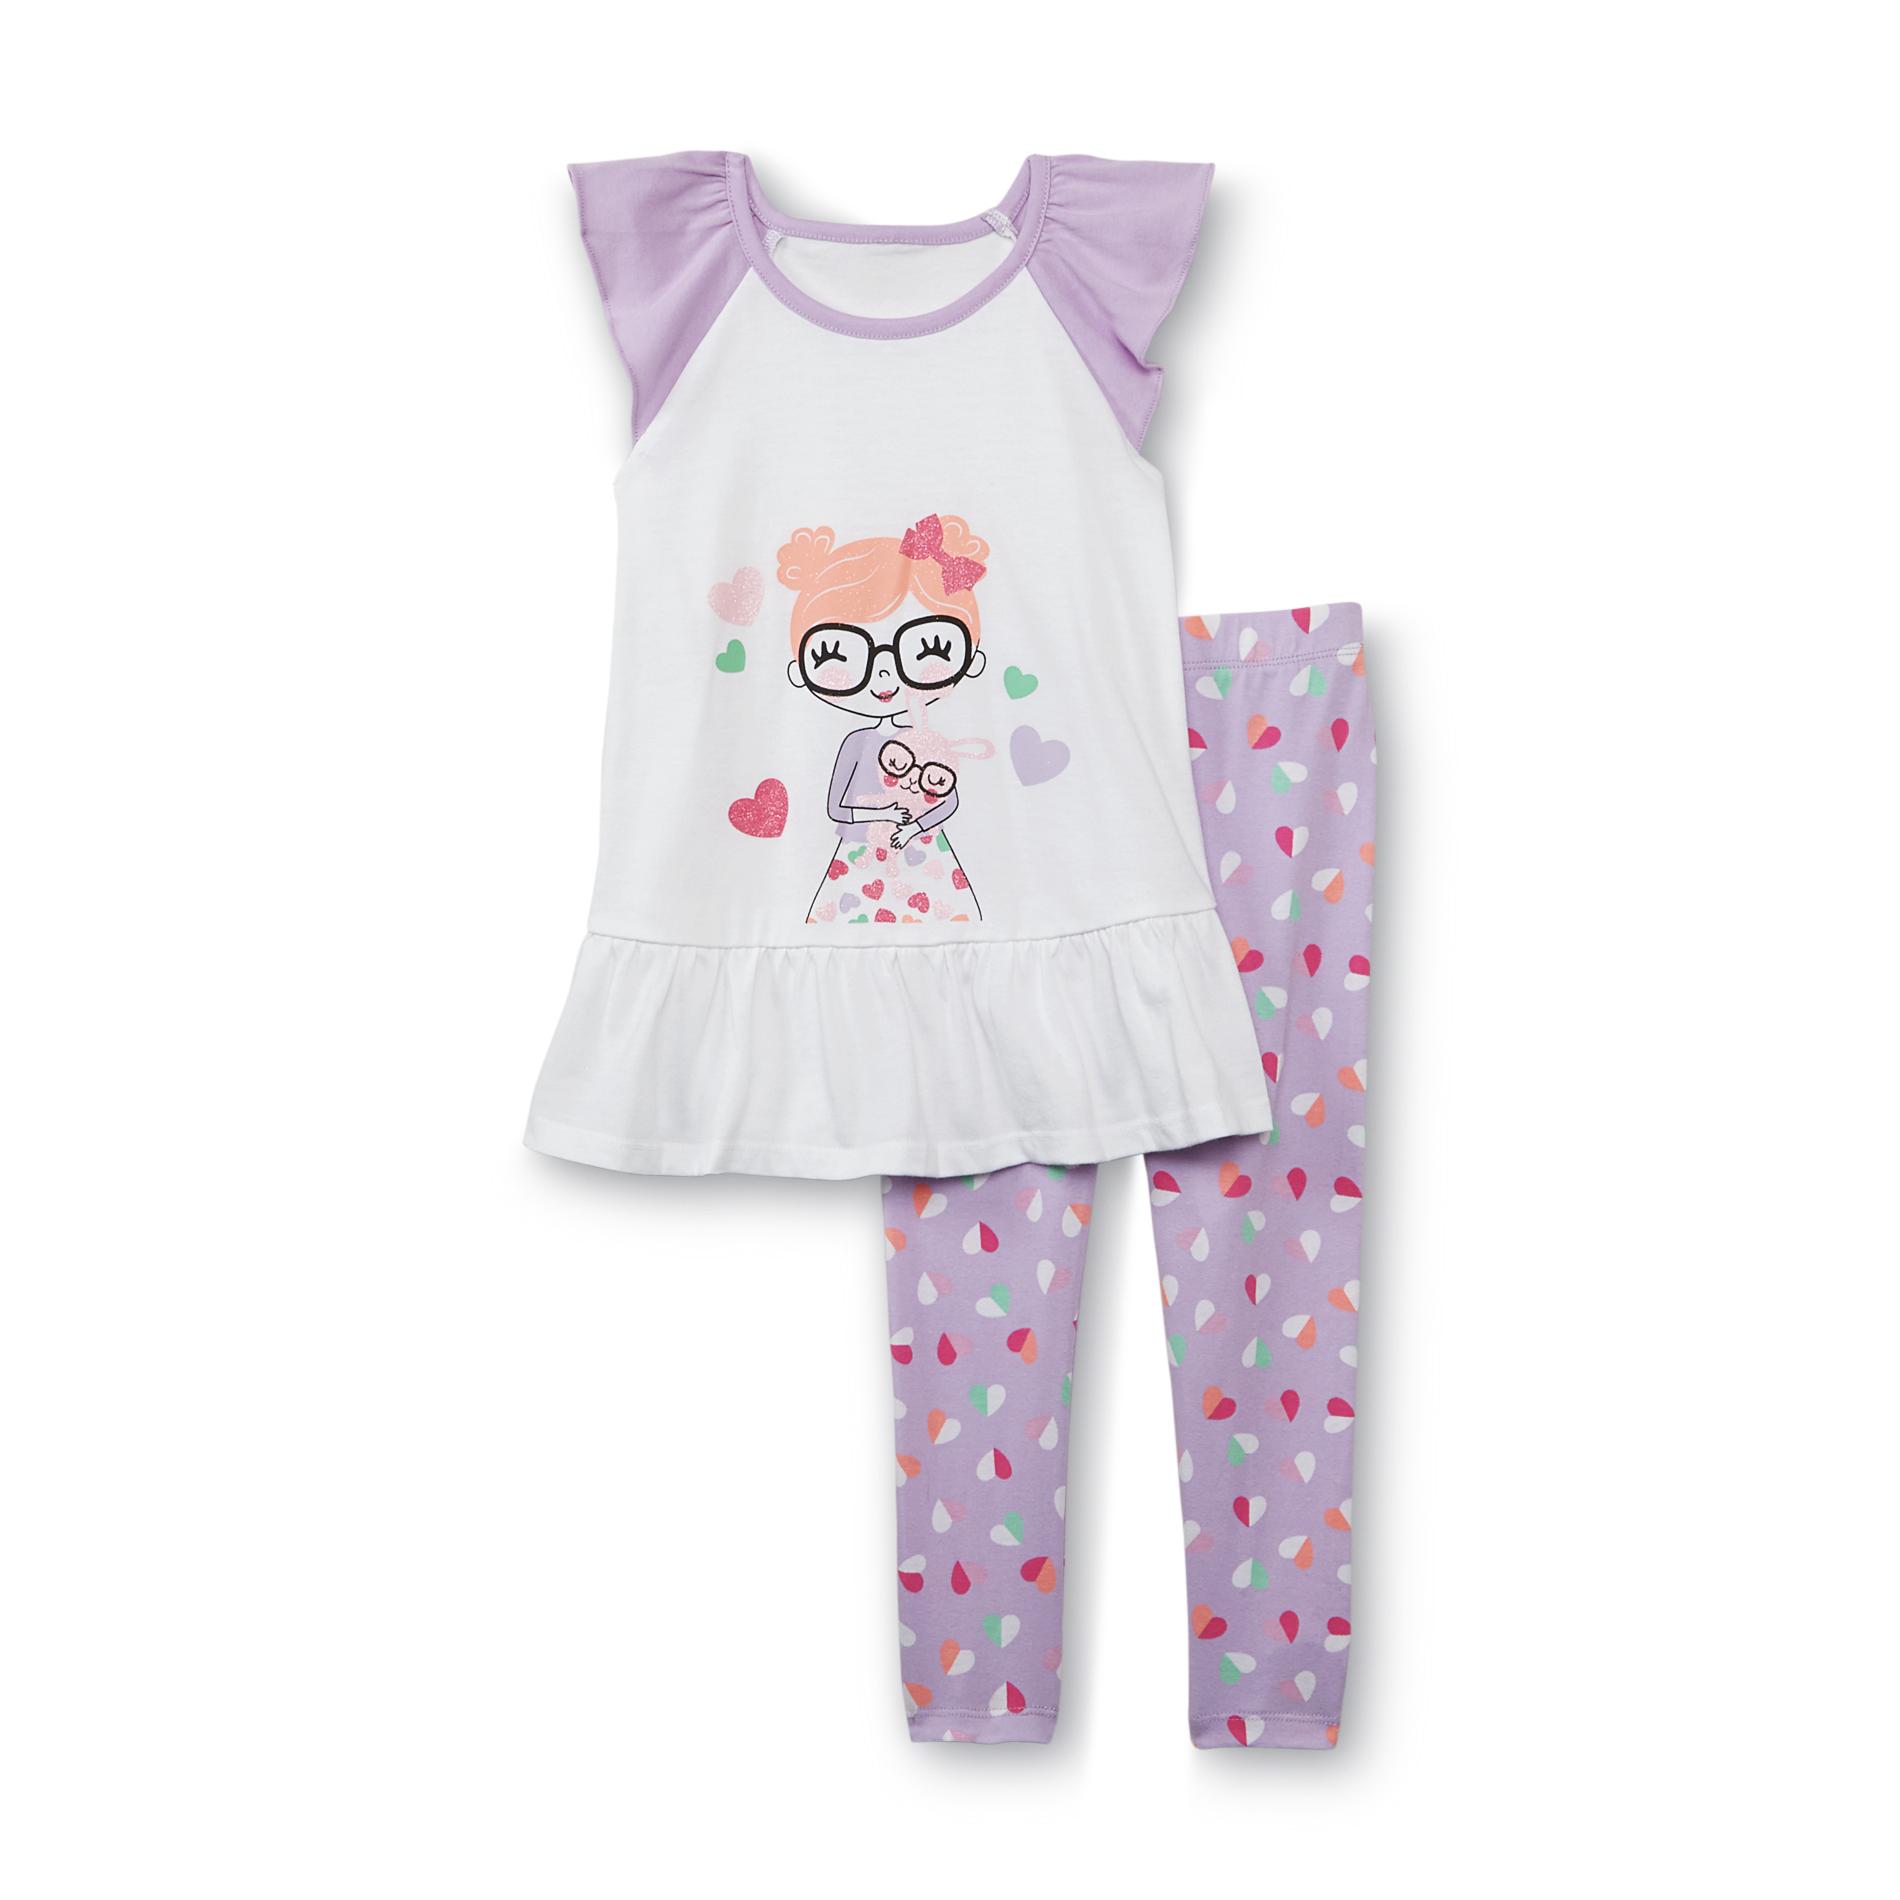 WonderKids Infant & Toddler Girl's Graphic Tunic & Leggings - Bunny